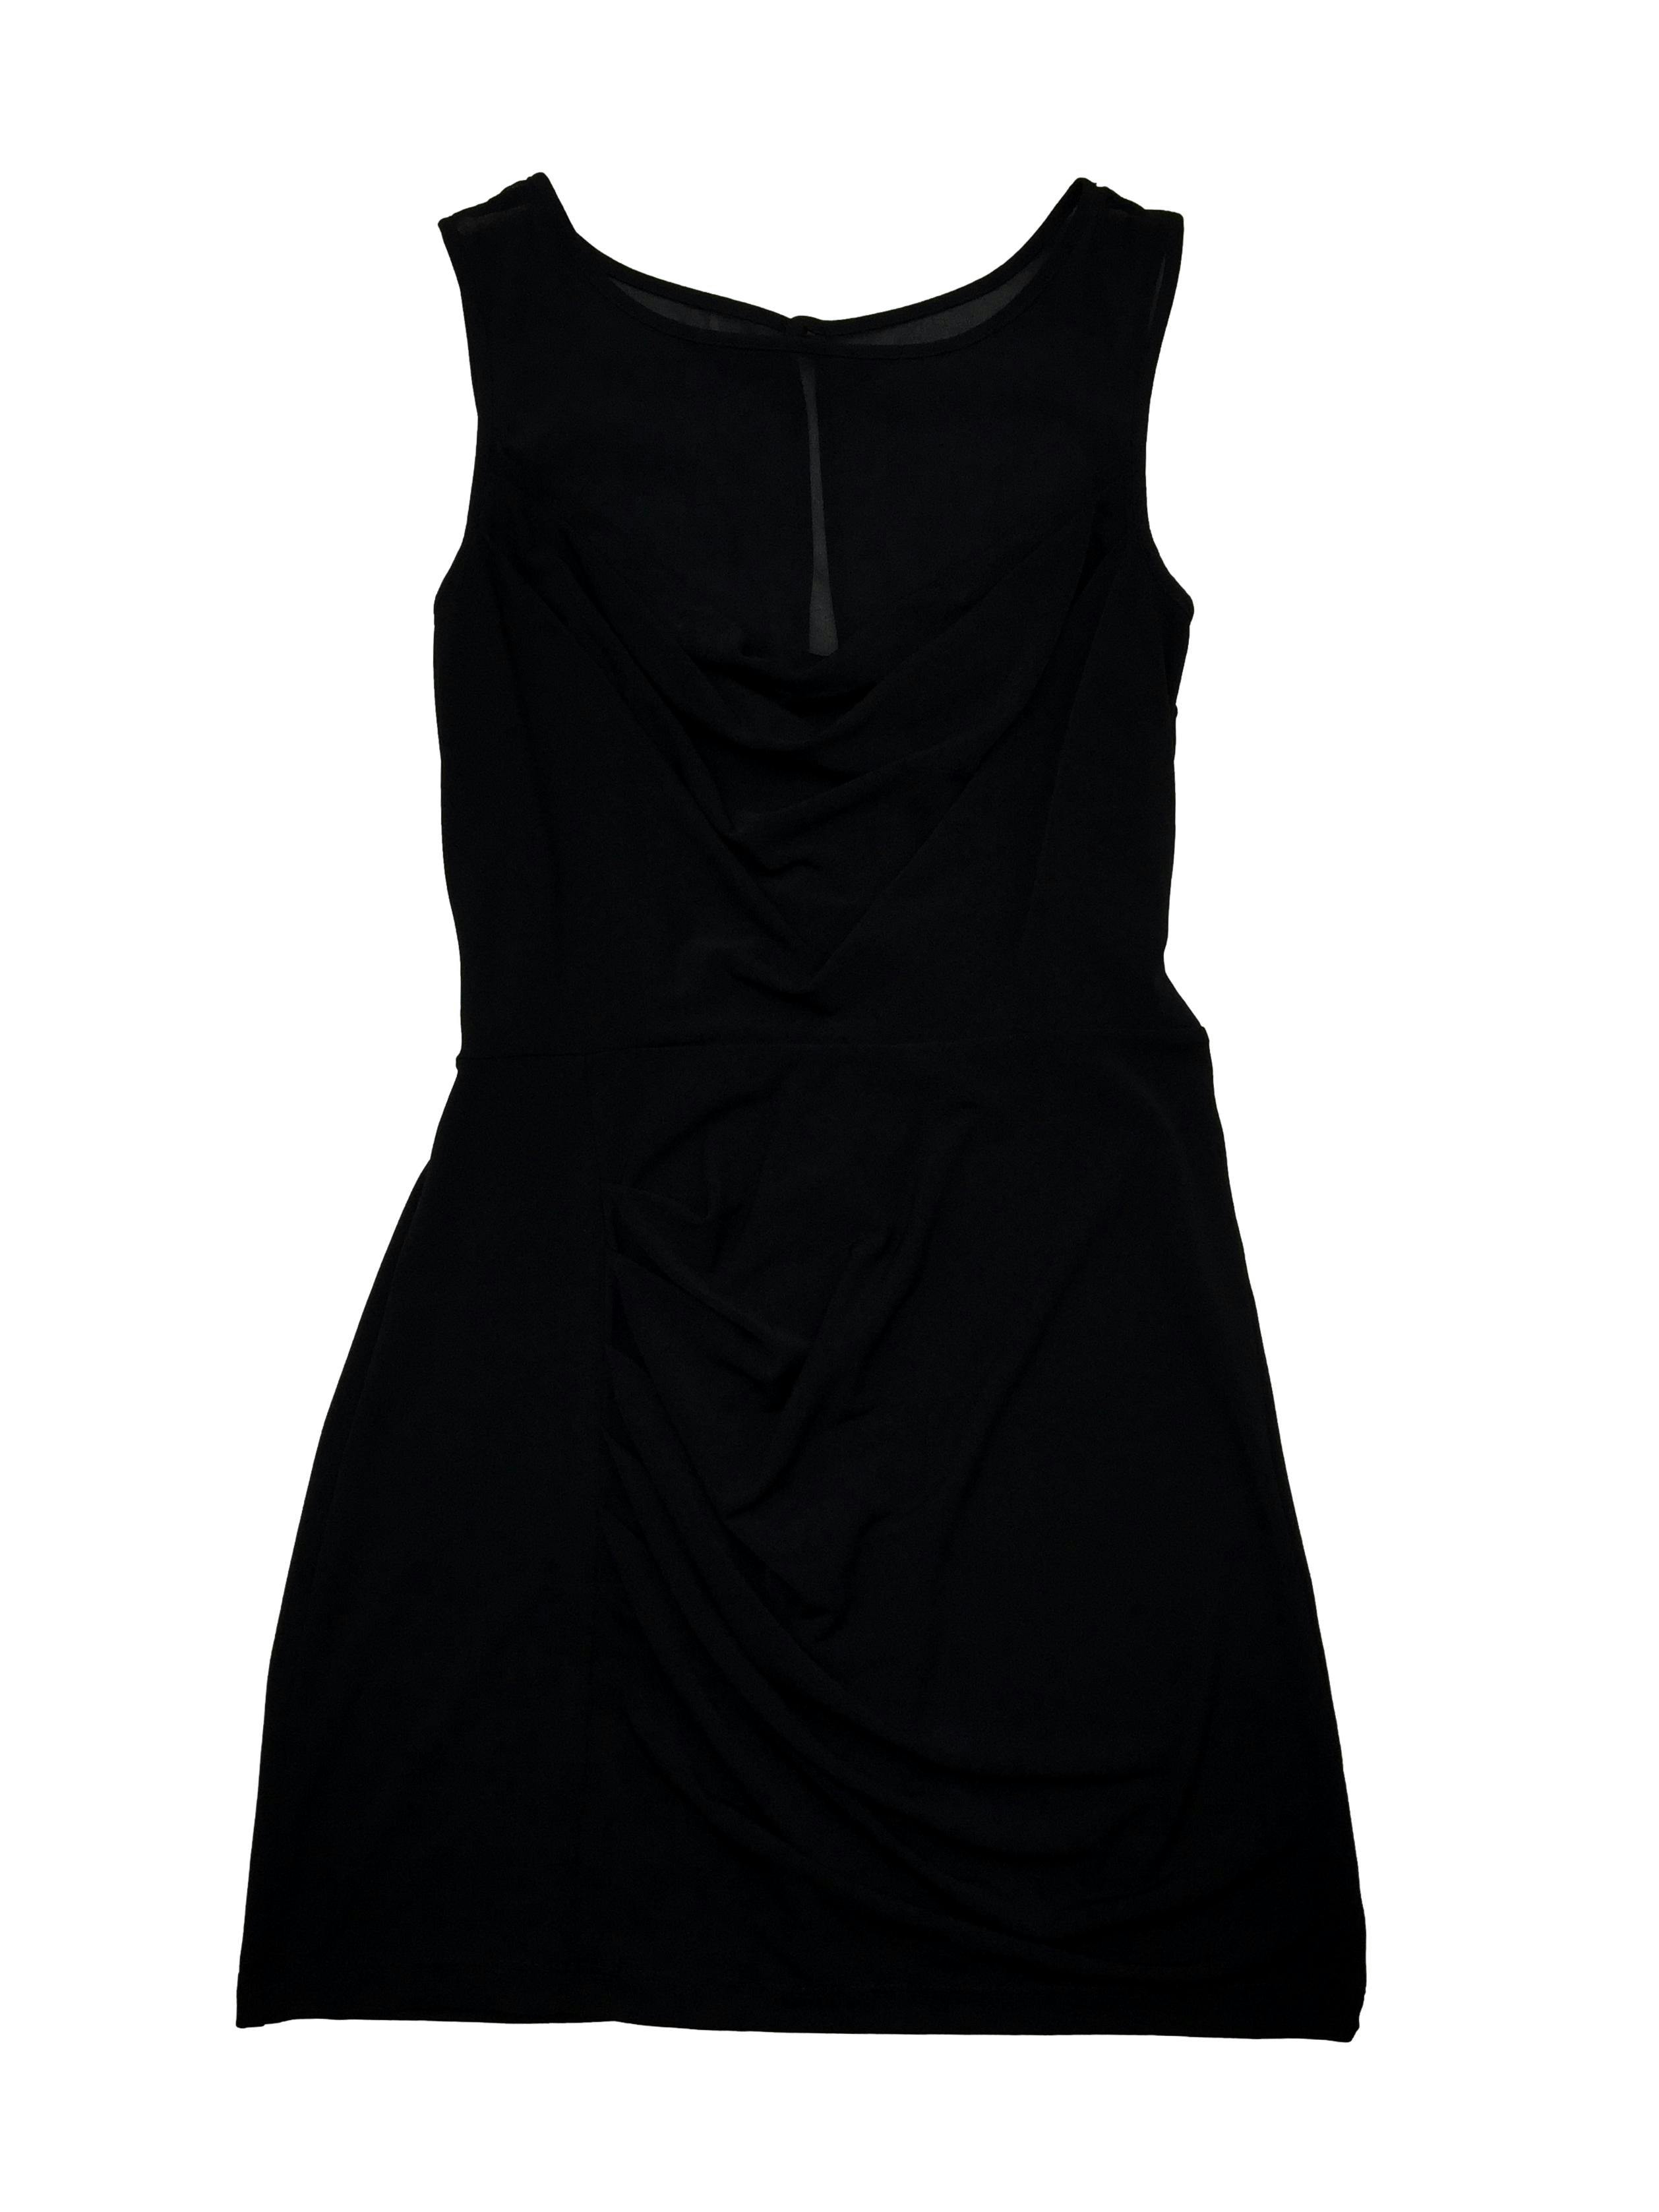 Vestido negro Maxancleo tela stretch drapeada, superior de gasa y cierre posterior. Busto: 86cm, Largo 80cm